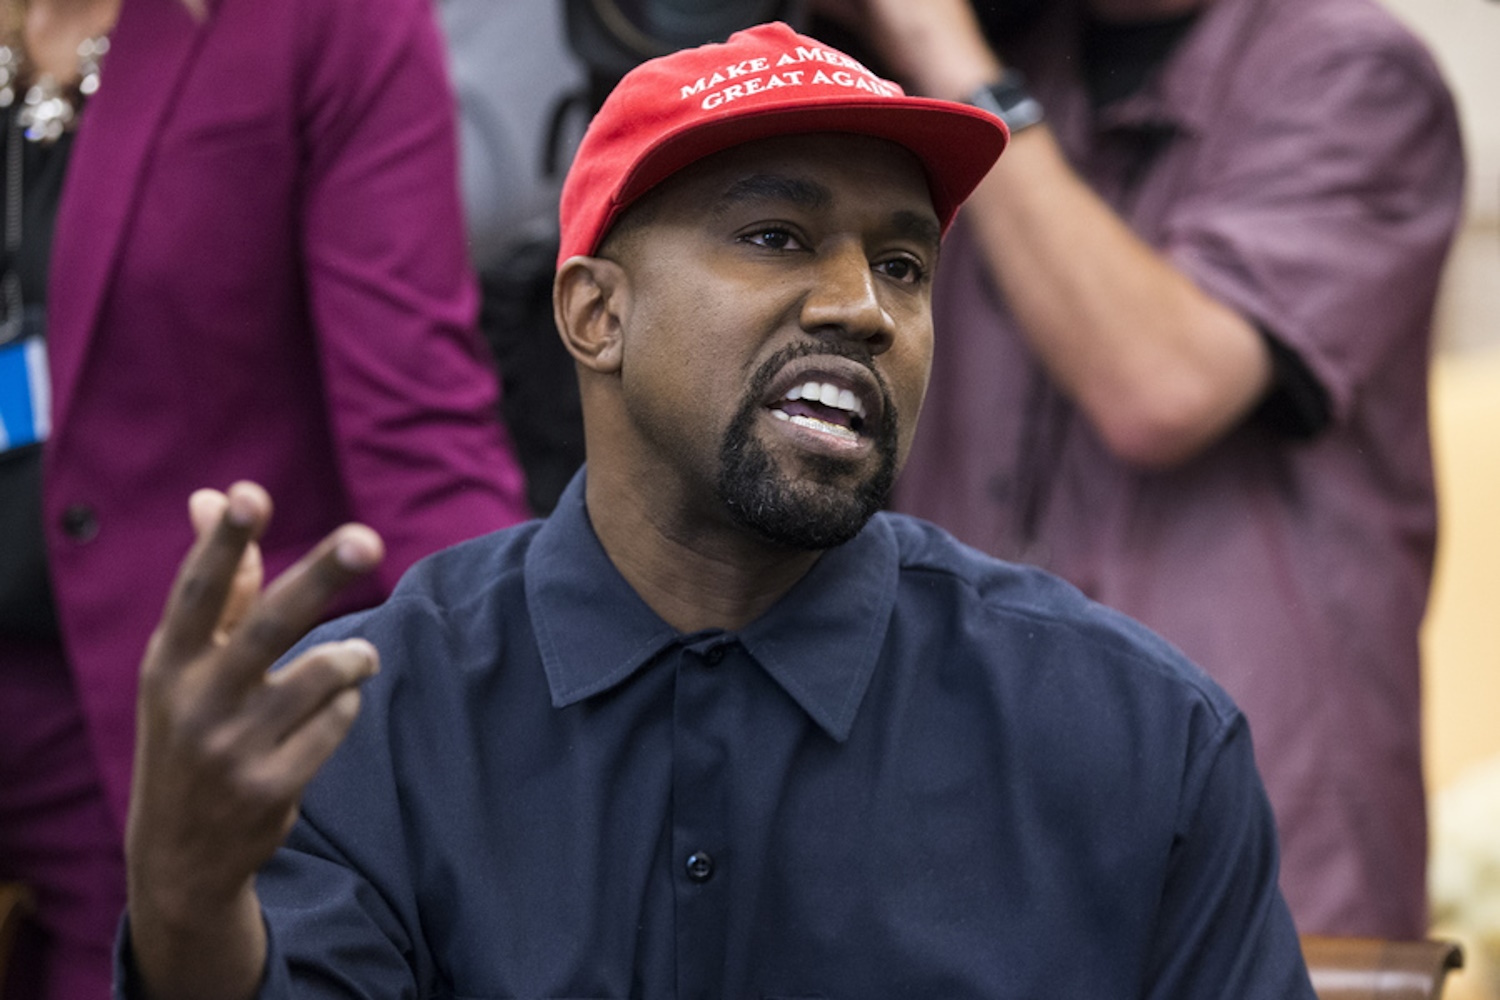 Ο Kanye West ζήτησε συγγνώμη από την εβραϊκή κοινότητα για τις αντισημιτικές δηλώσεις του